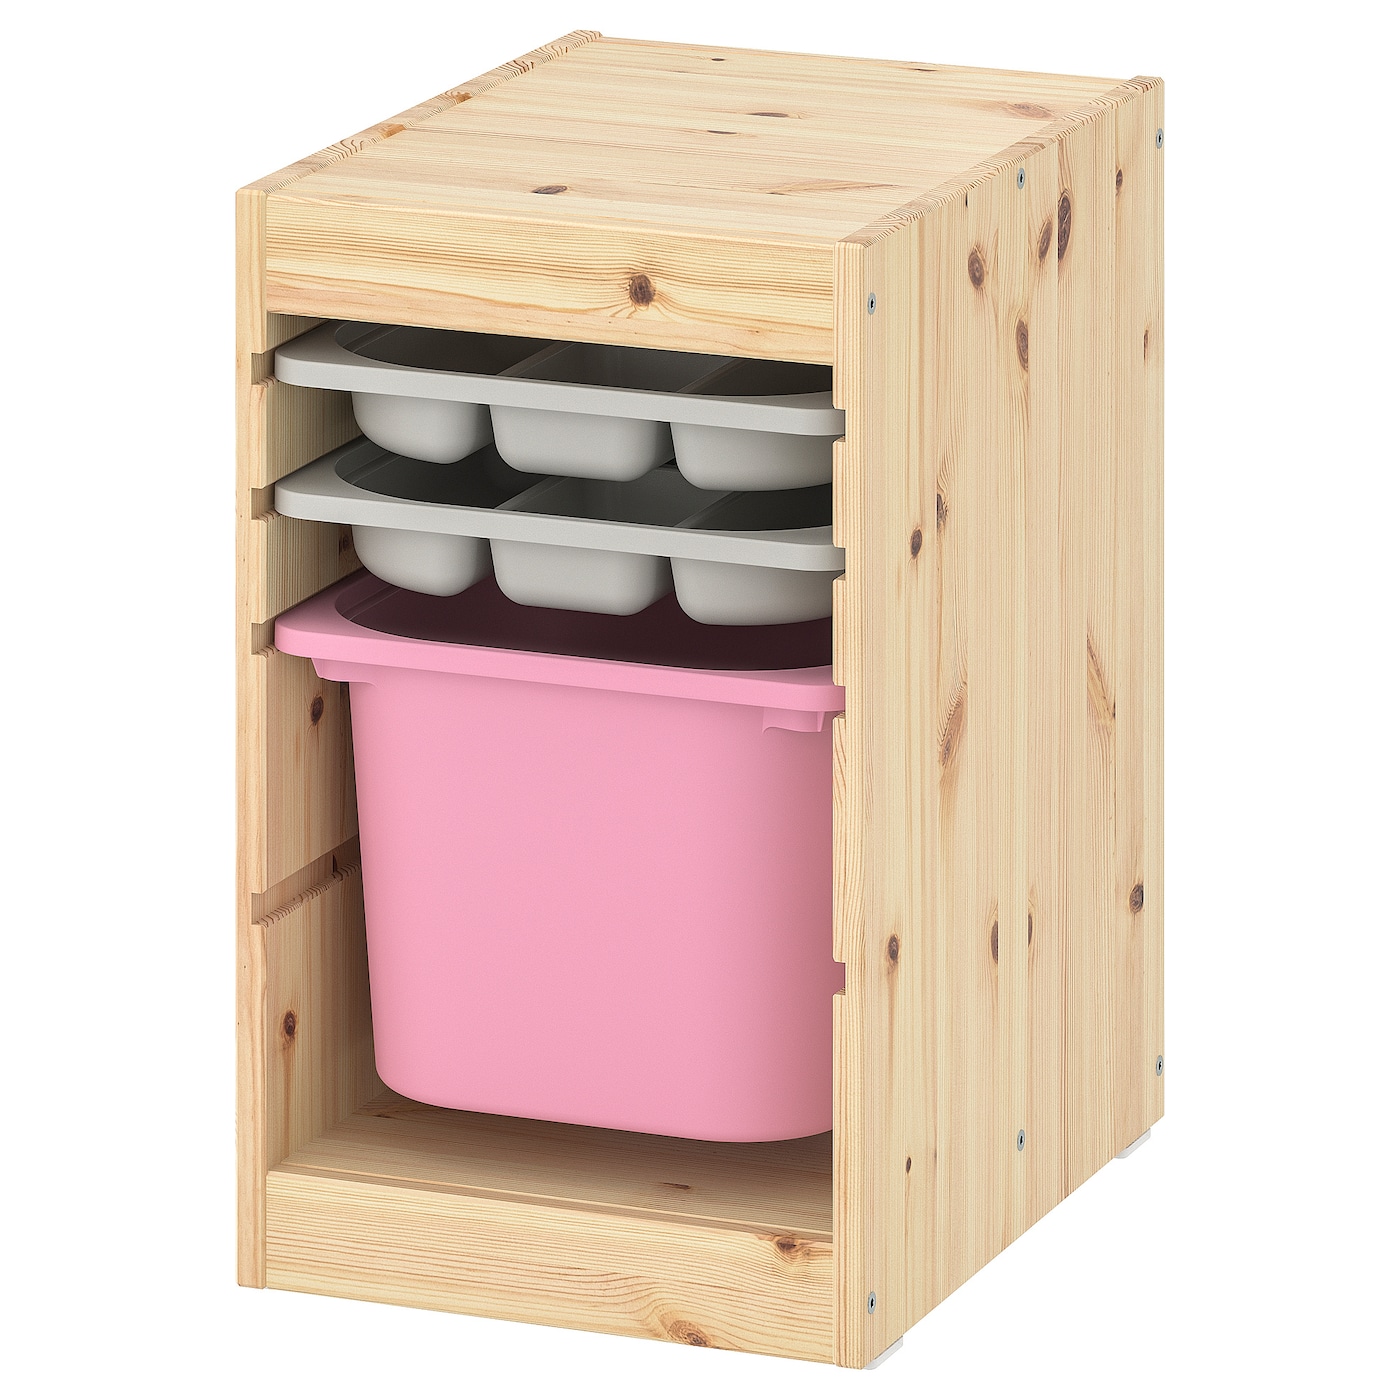 Стеллаж - IKEA TROFAST, 32х44х52 см, сосна/розовый/бело-серый, ТРУФАСТ ИКЕА